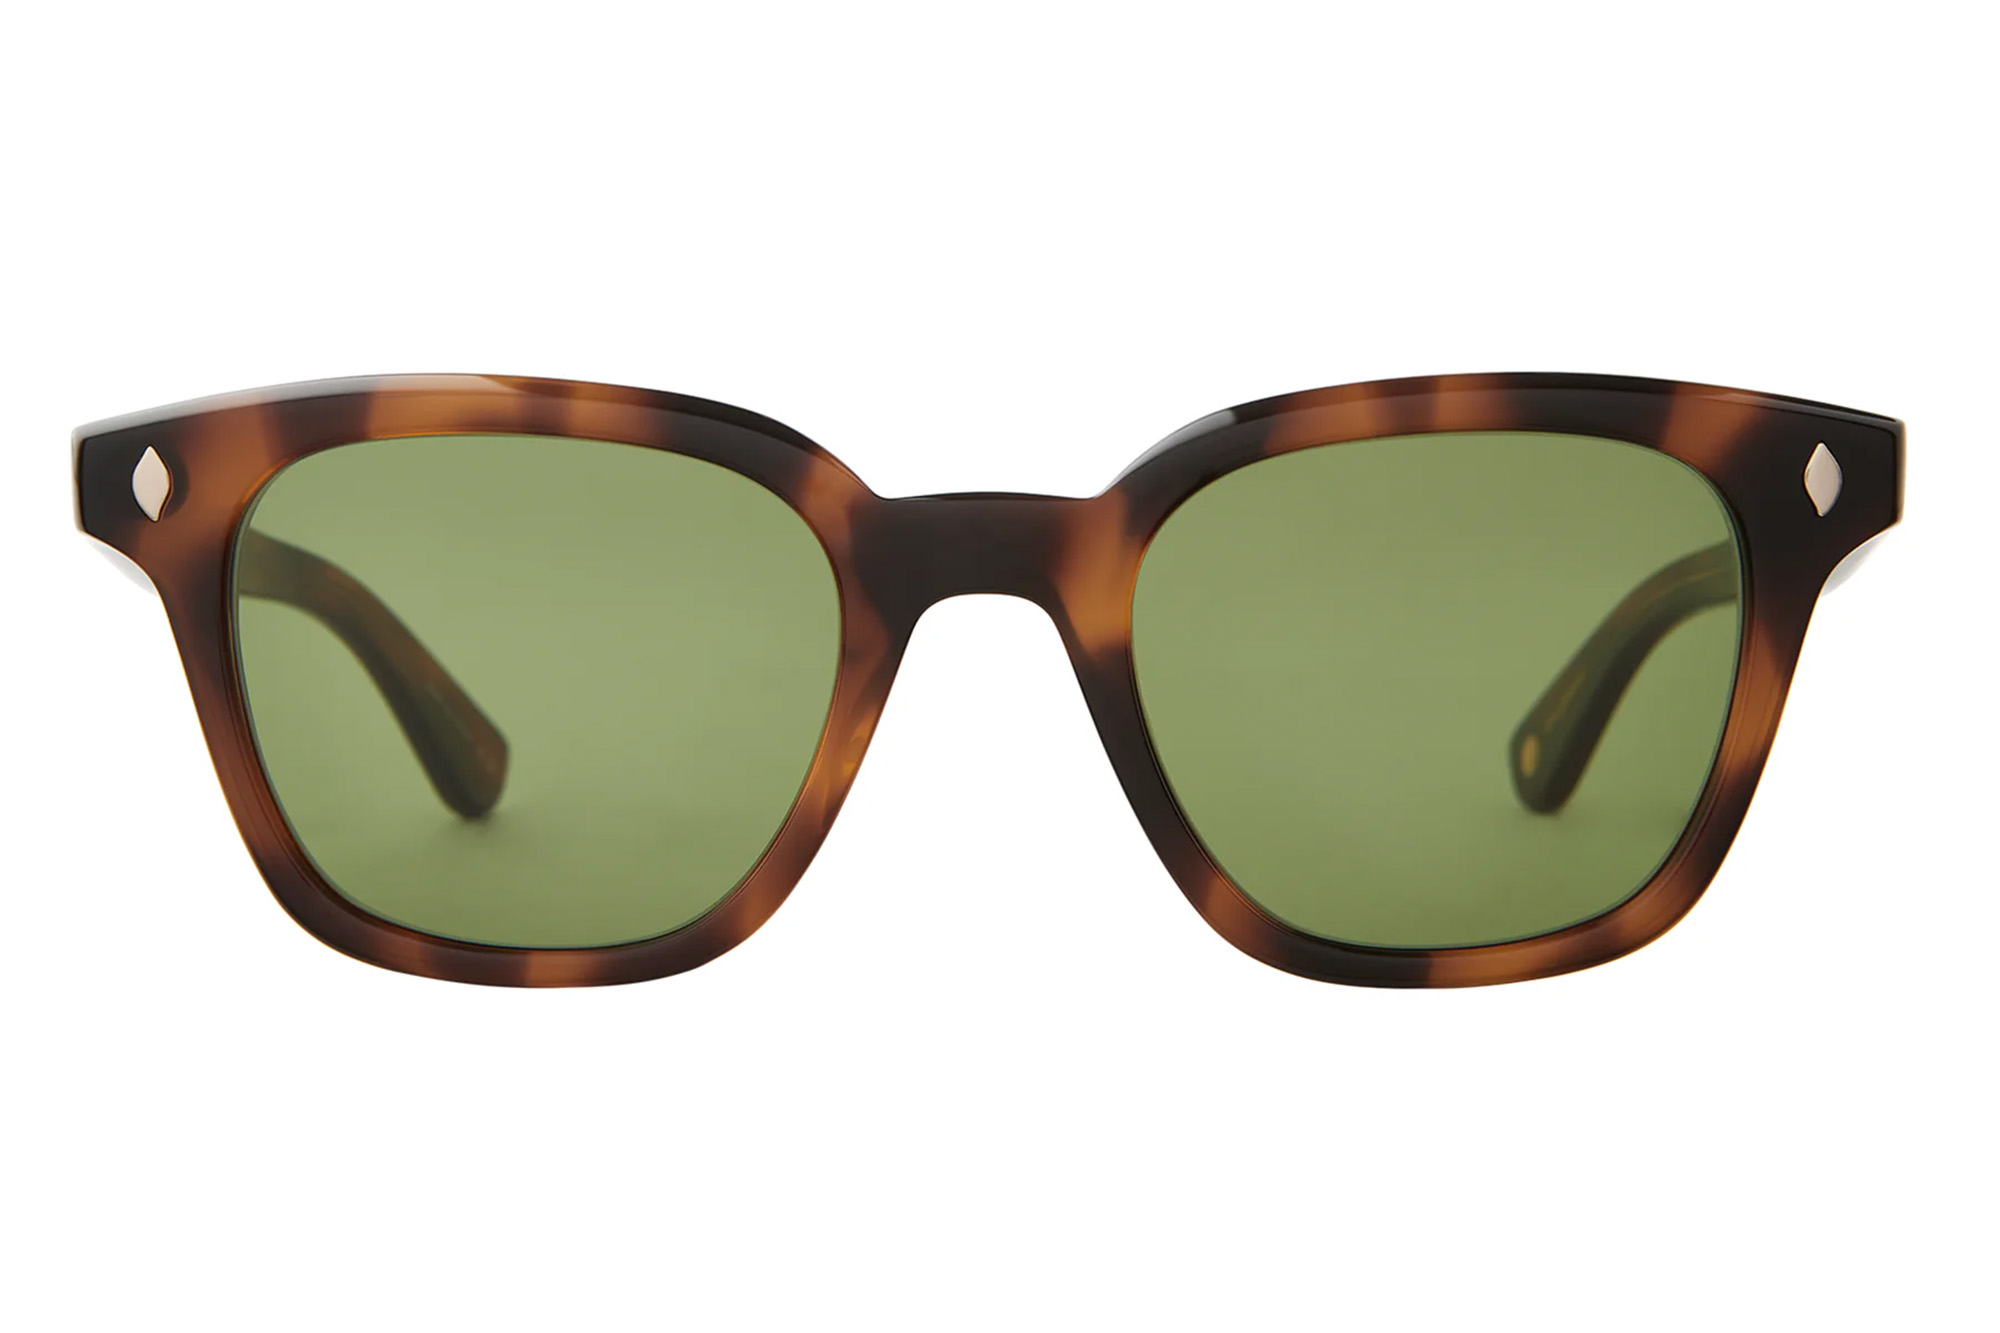 Garret Leight Sonnenbrille mit grünen Gläsern